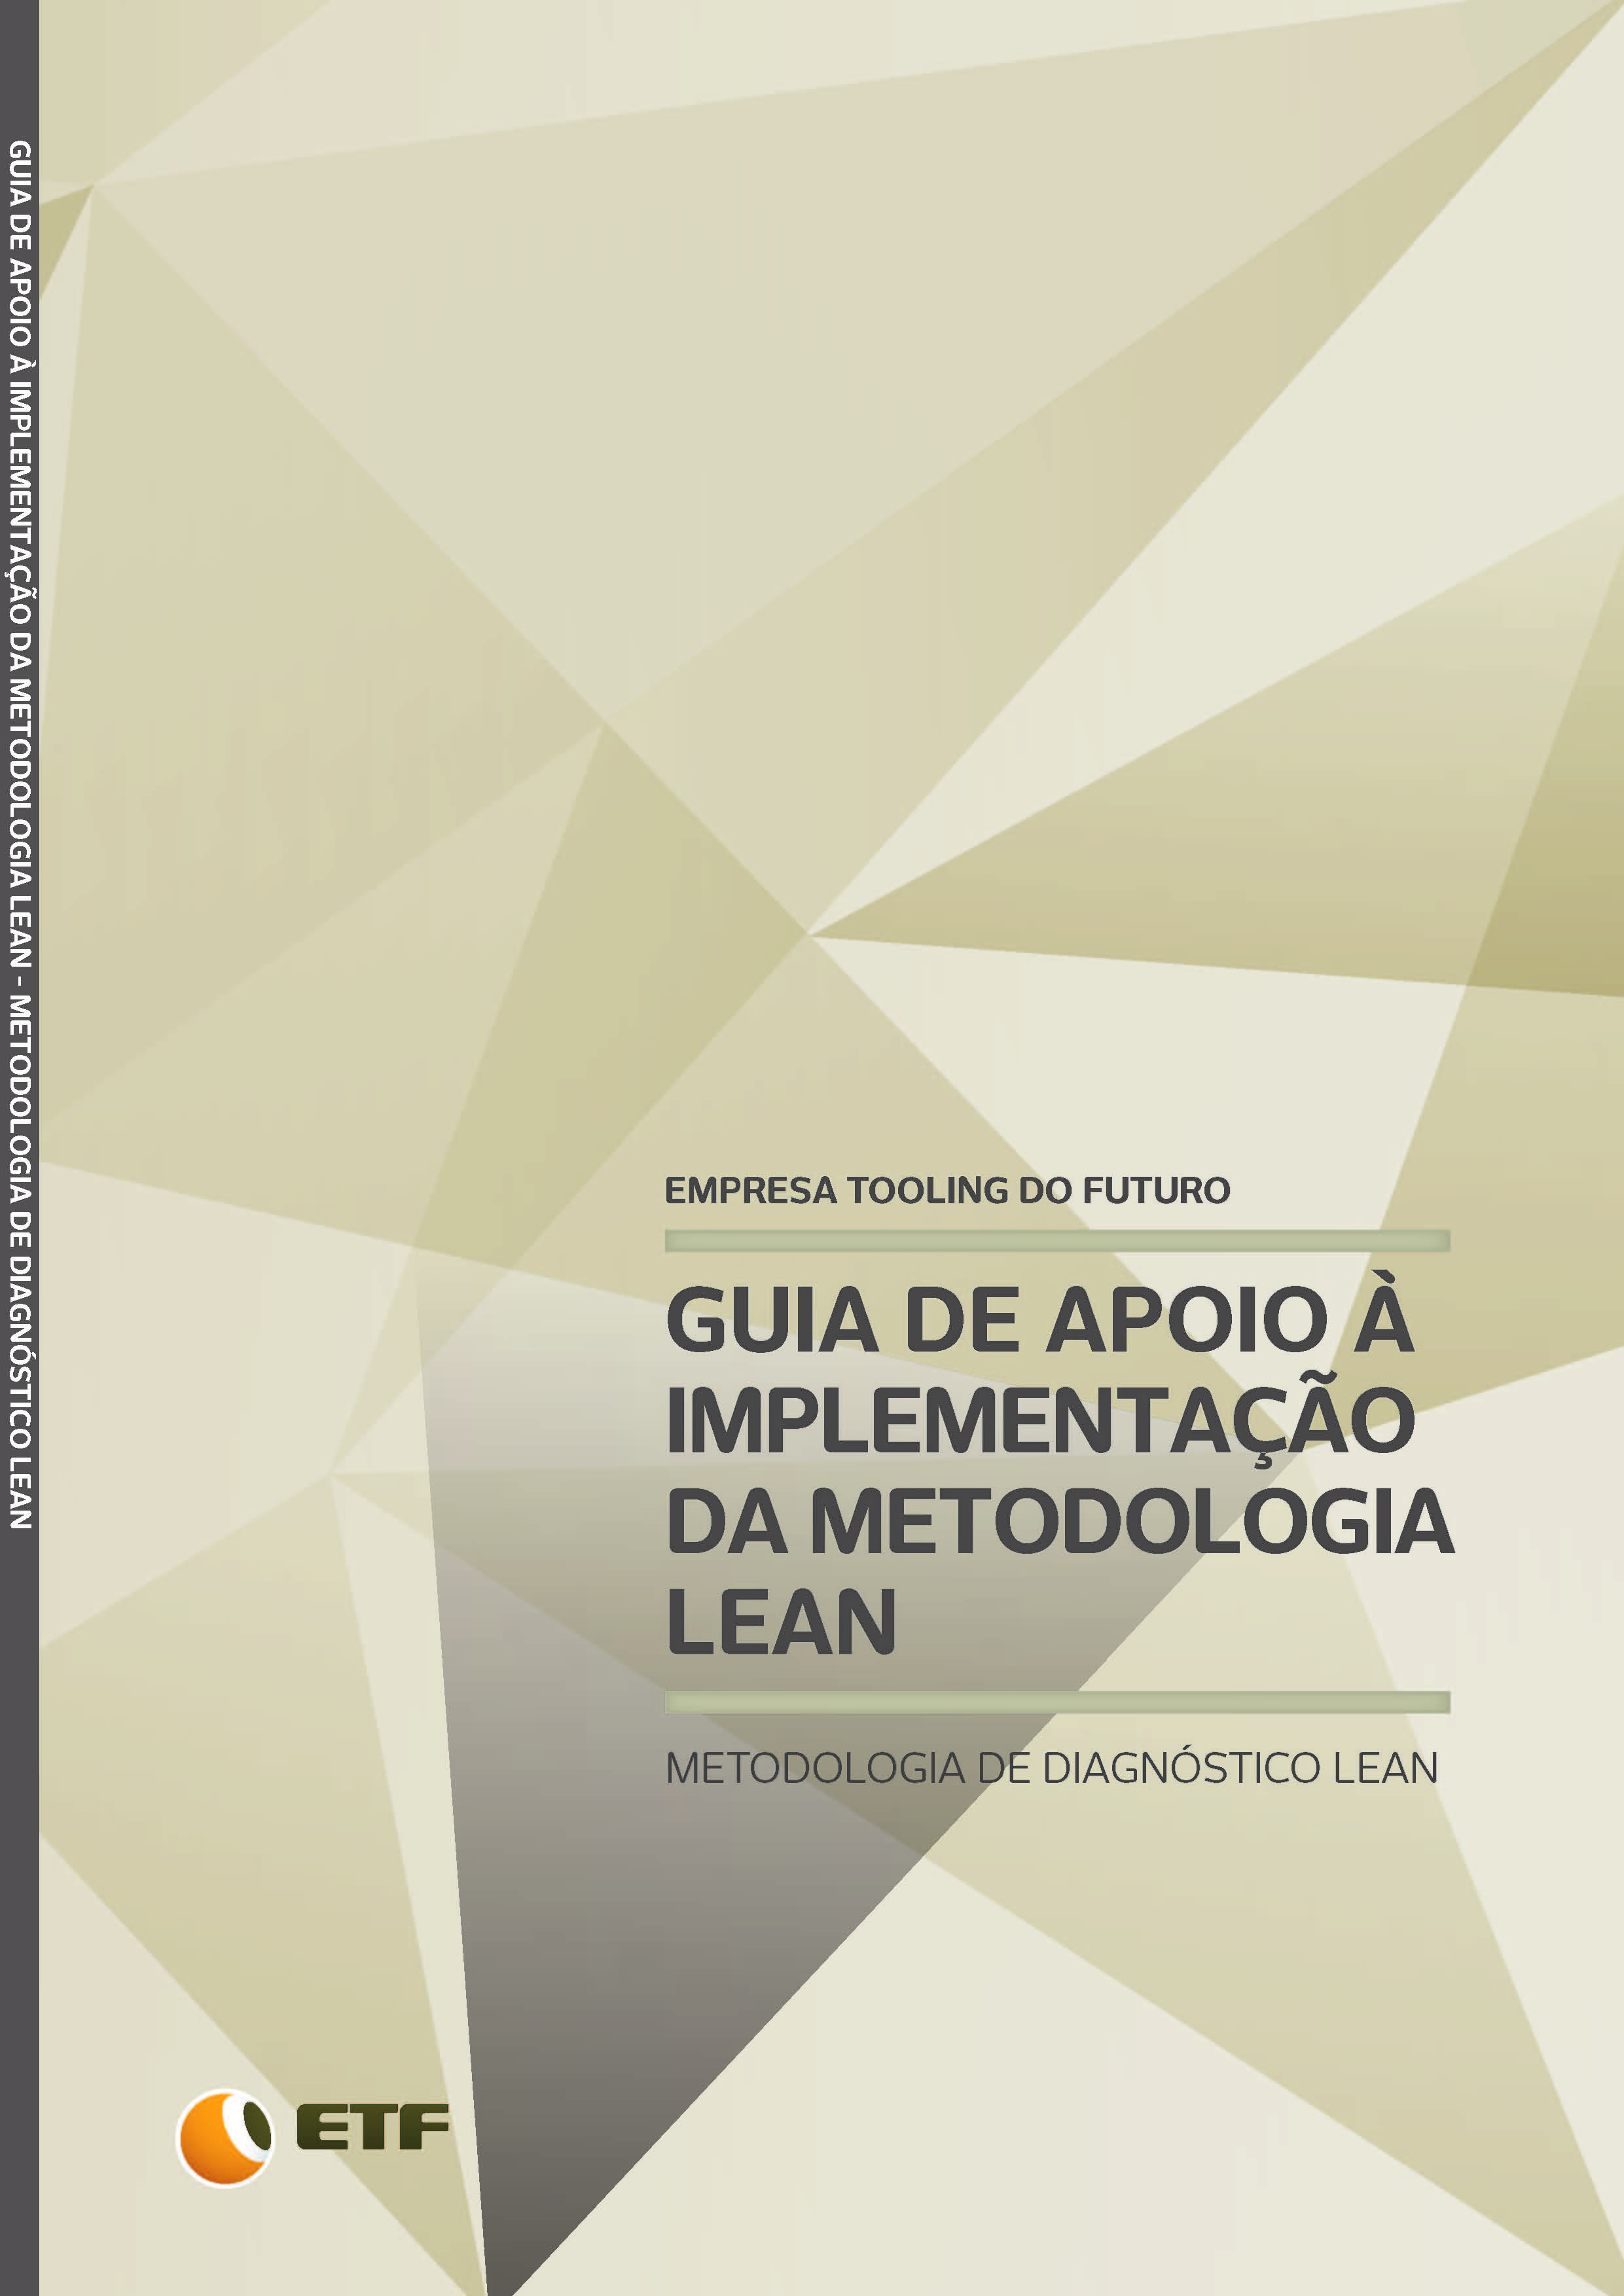 Cover of GUIA DE APOIO À IMPLEMENTAÇÃO DA METODOLOGIA LEAN - Metodologia de Diagnóstico Lean para as Empresas de Engineering & Tooling